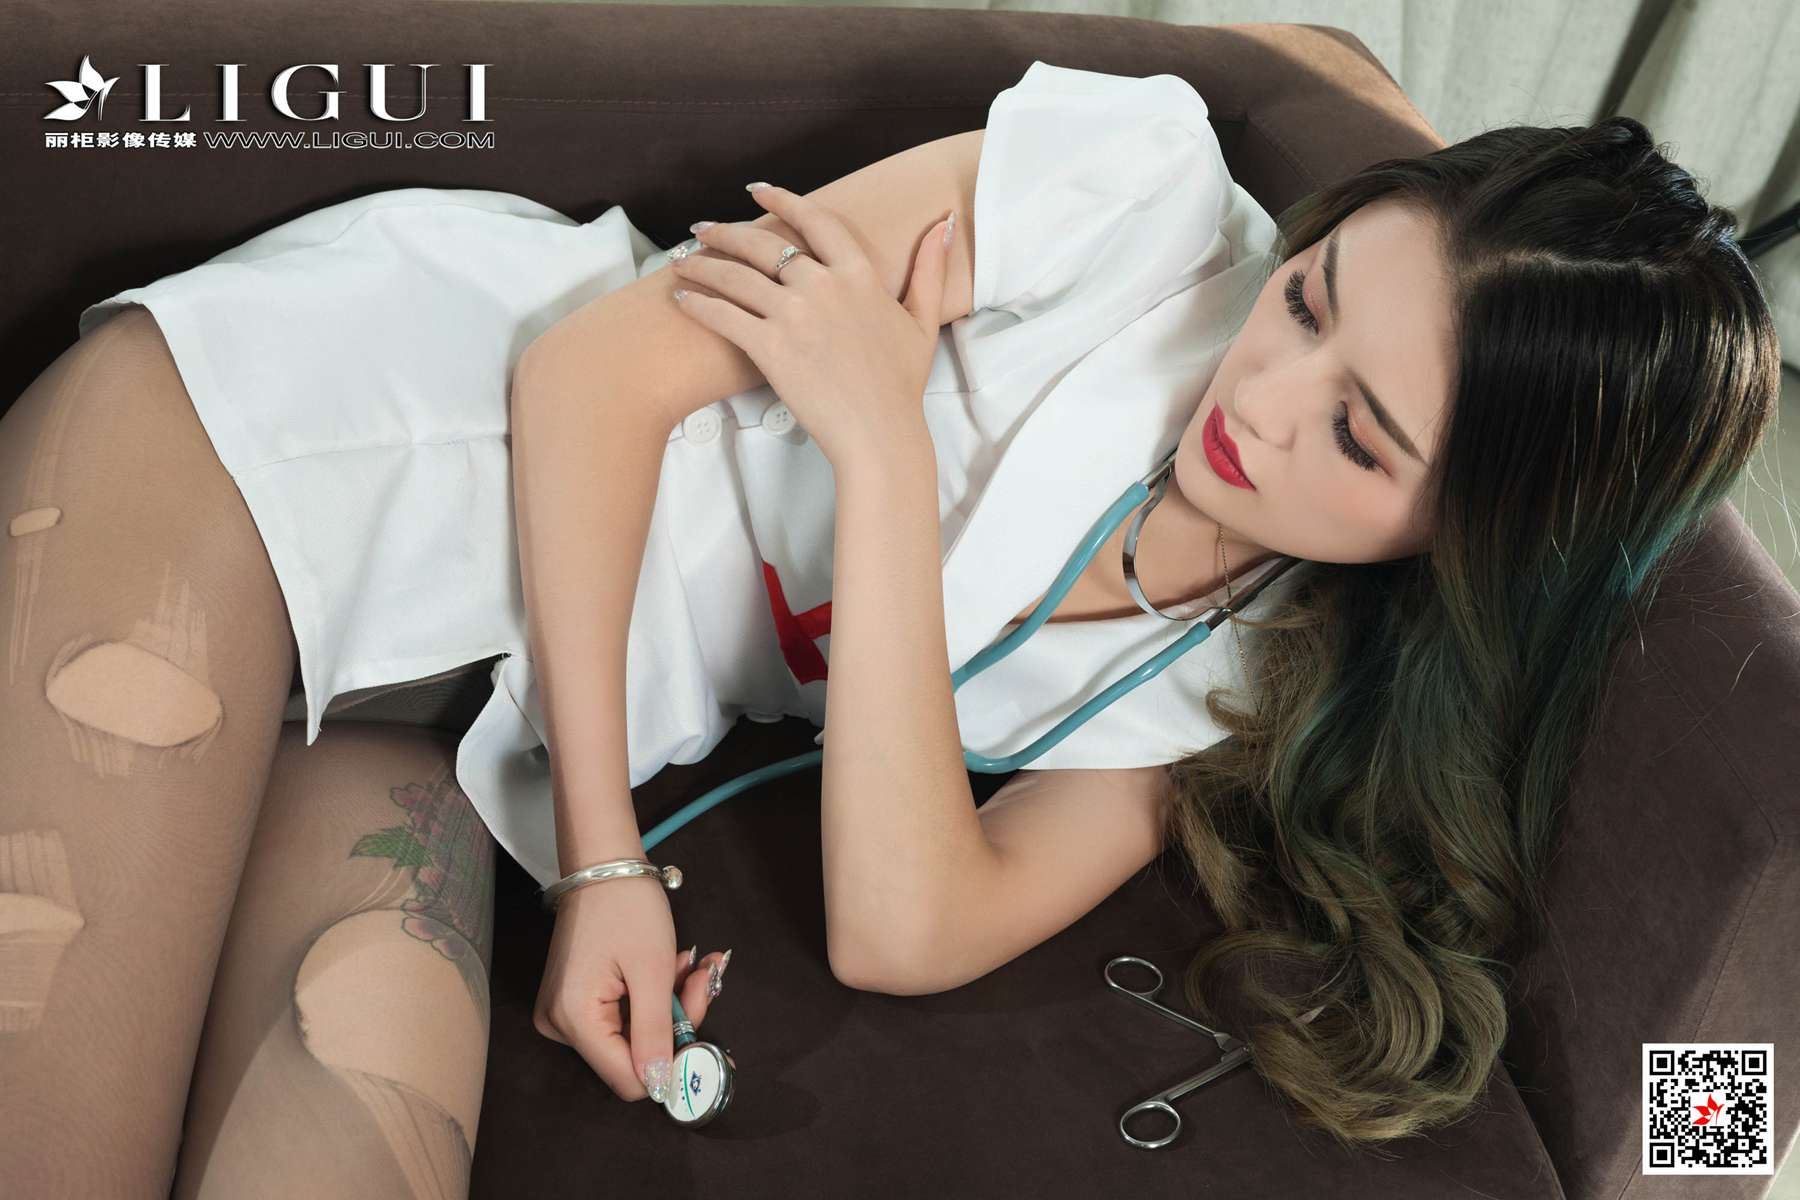 Ligui丽柜 2020.11.11 网络丽人 Model 甜甜 在线浏览